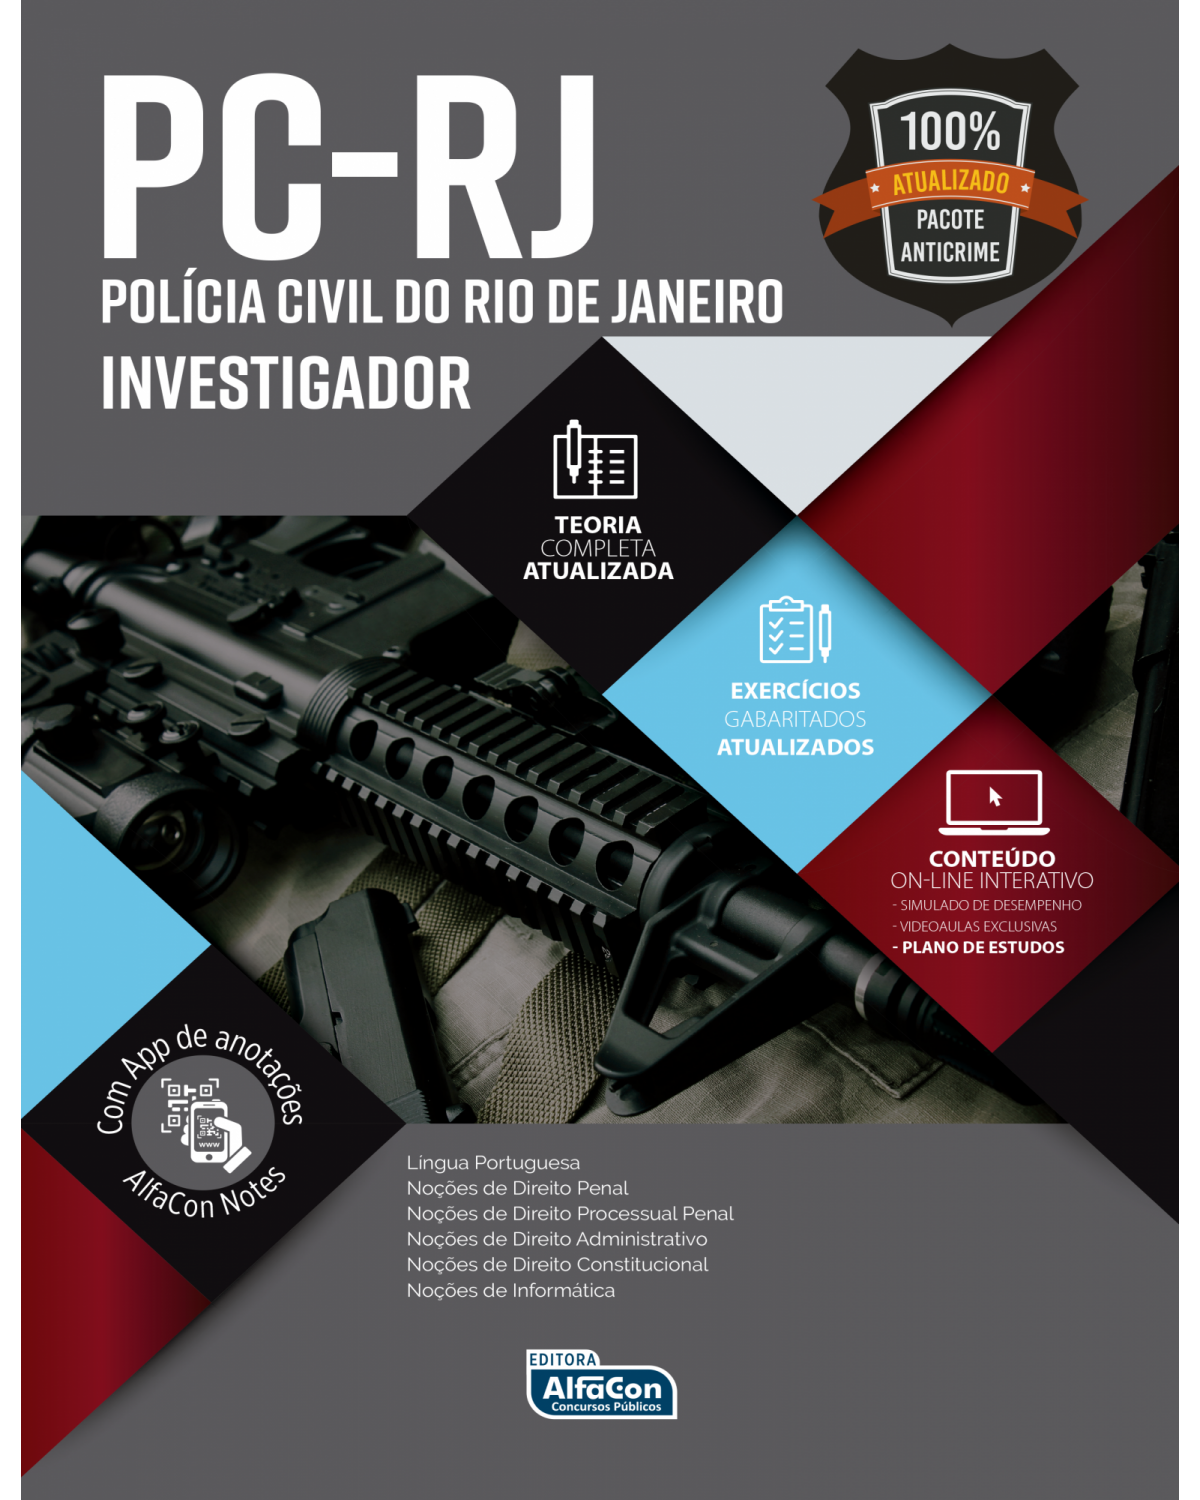 Polícia civil do estado do Rio de Janeiro - PC RJ 2020 - investigador policial - 1ª Edição | 2020